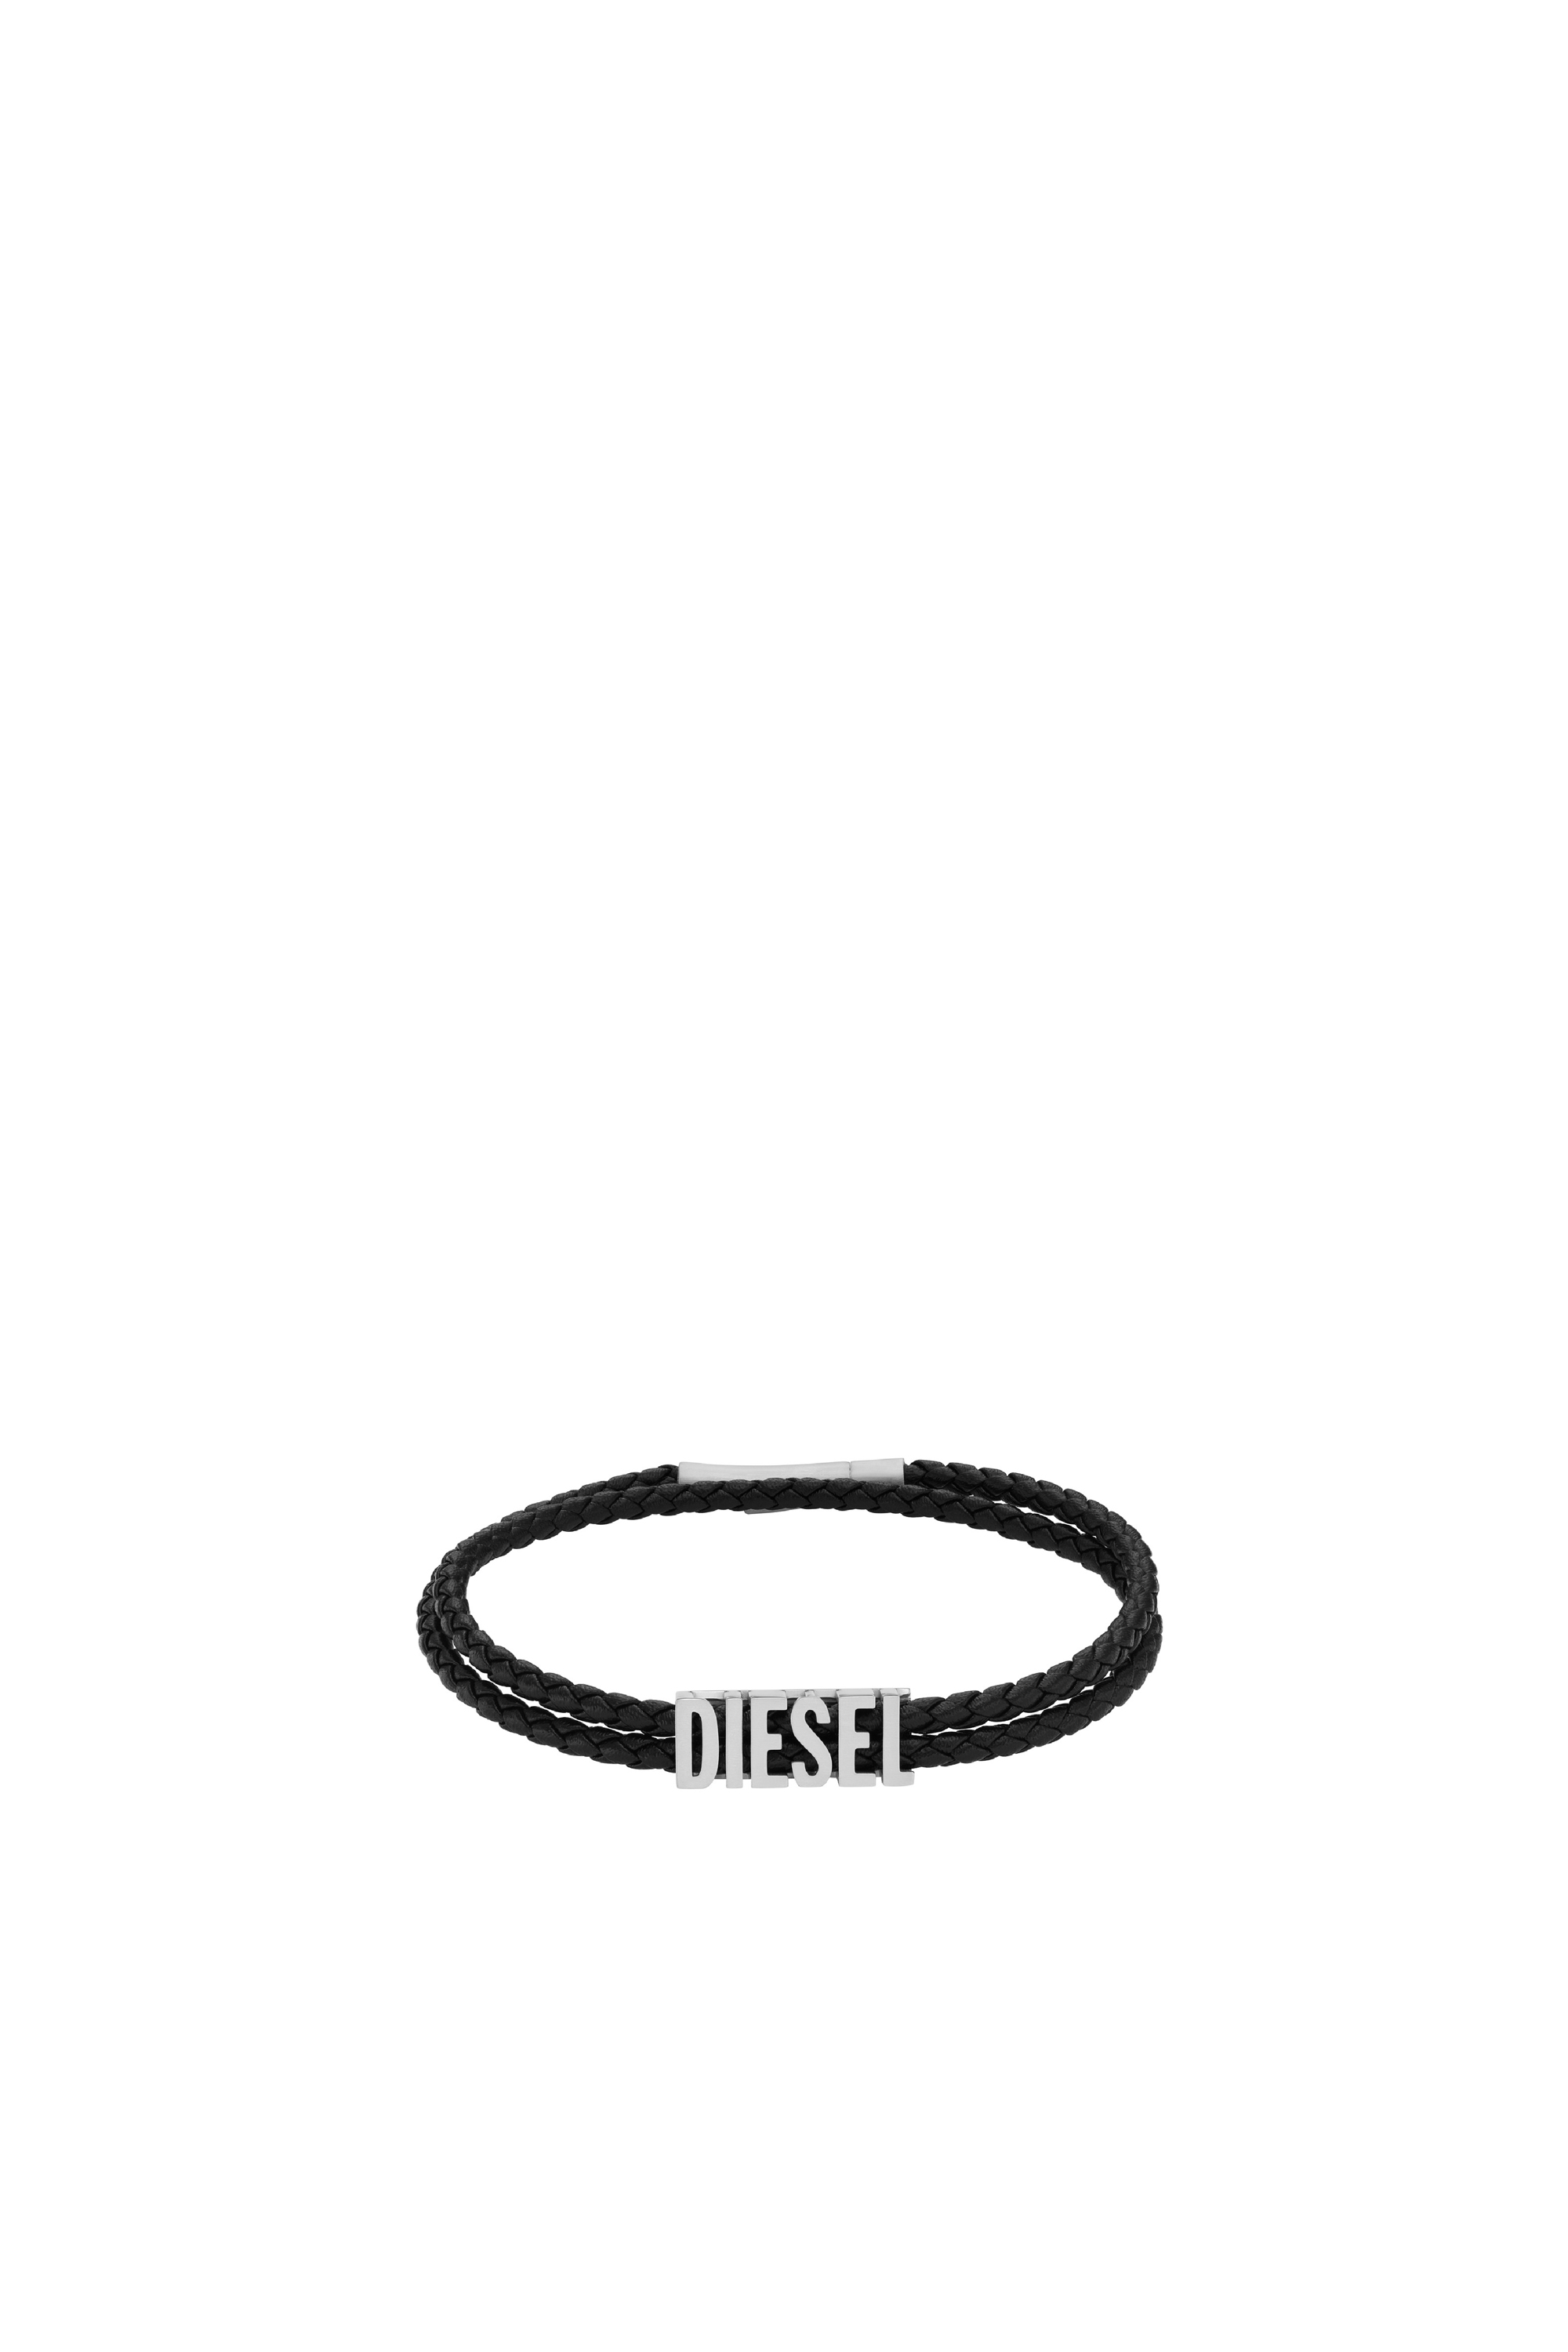 Diesel - Black leather bracelet - Bracelets - Man - Black